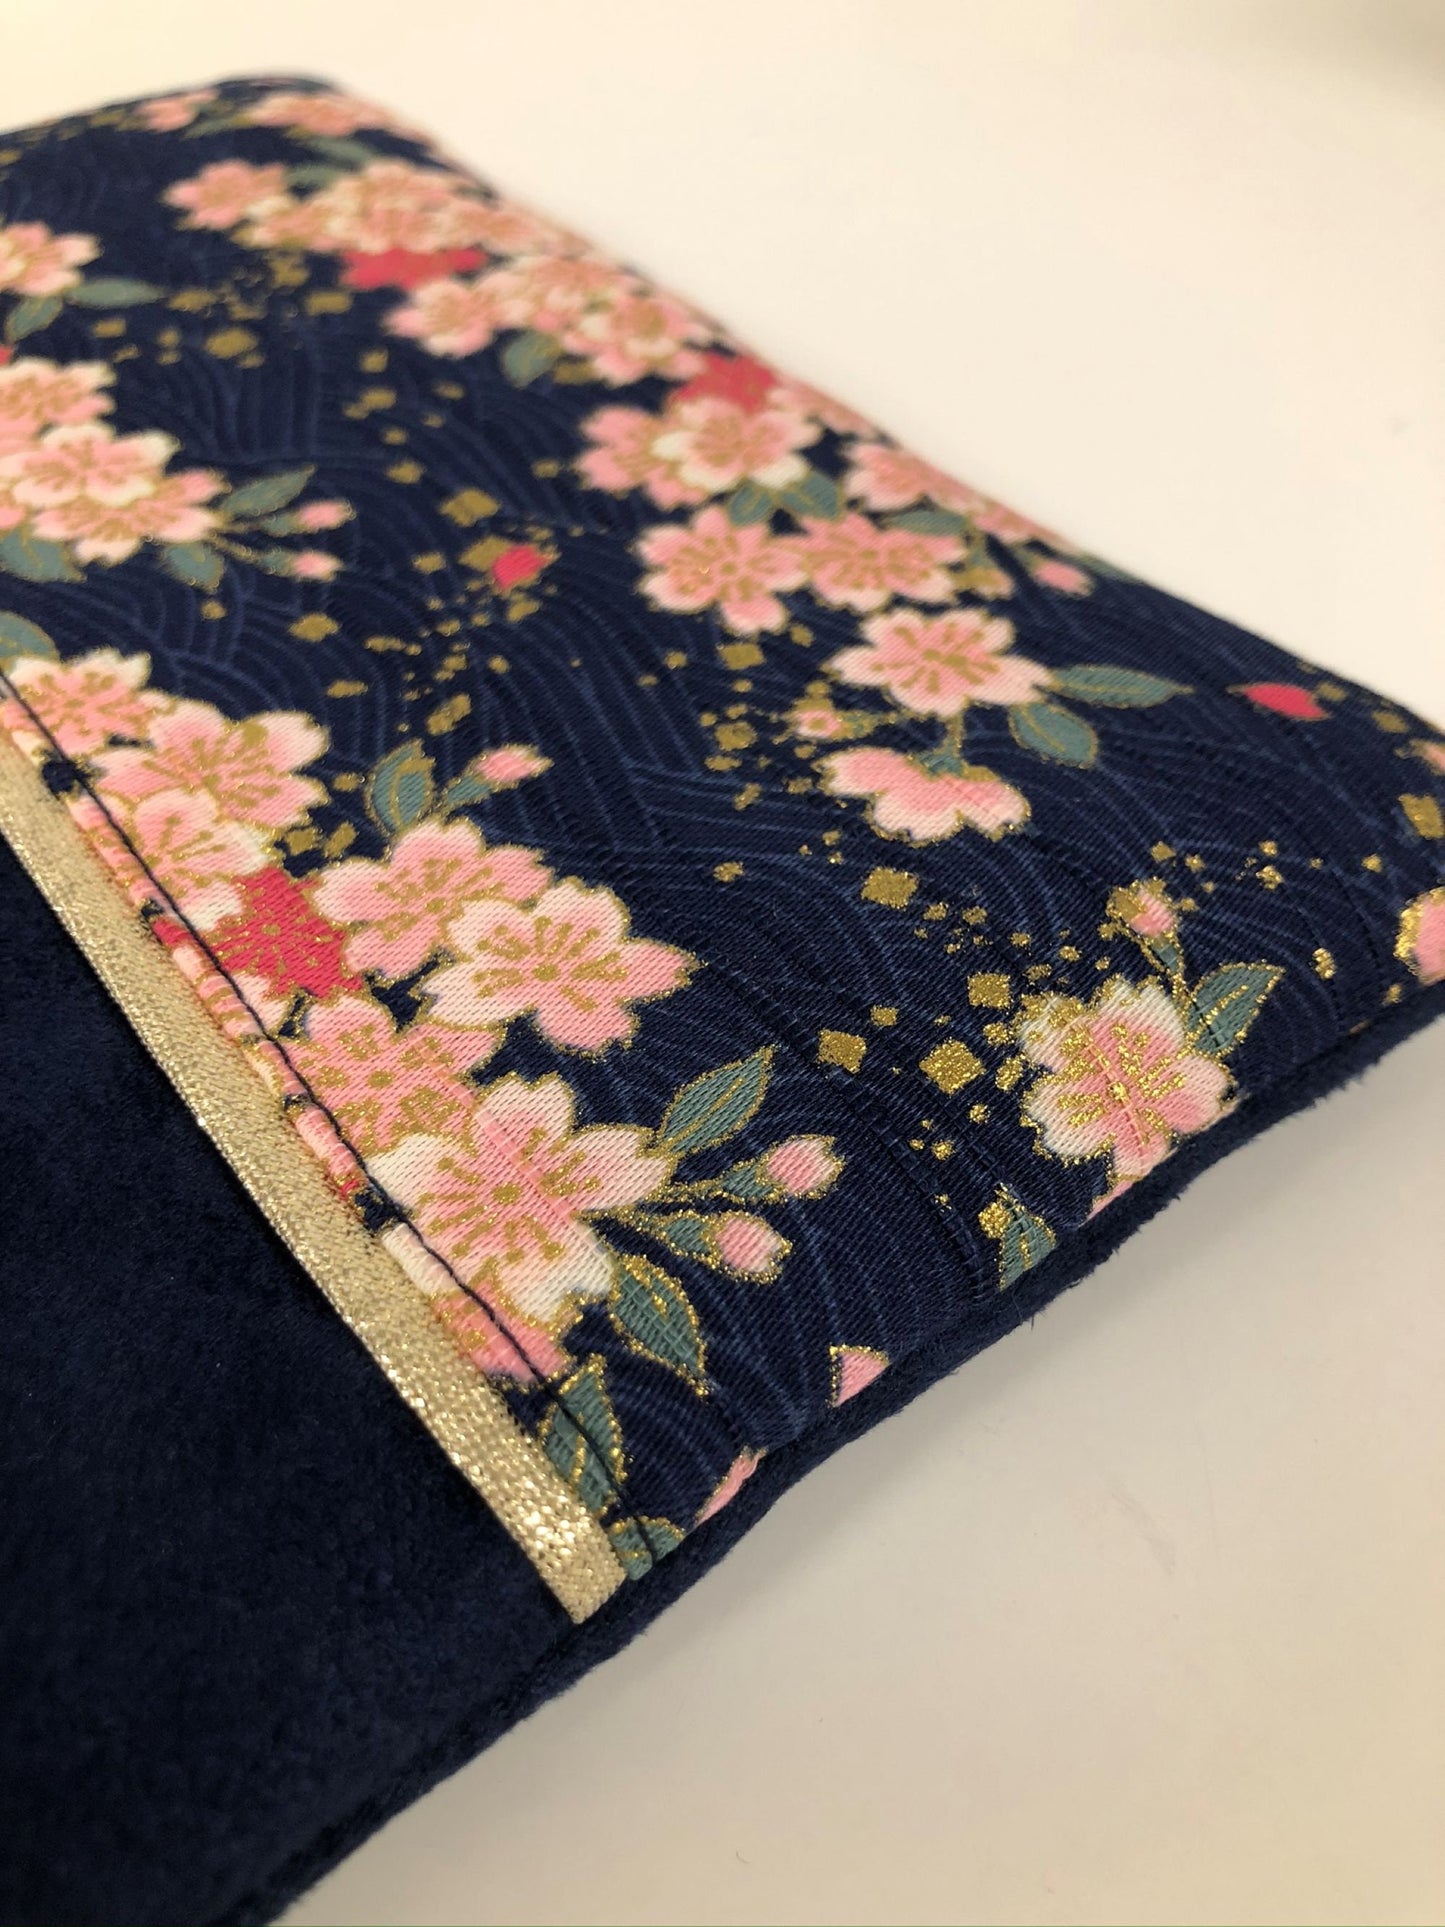 Porte-monnaie bleu marine et doré en tissu japonais fleurs de cerisier